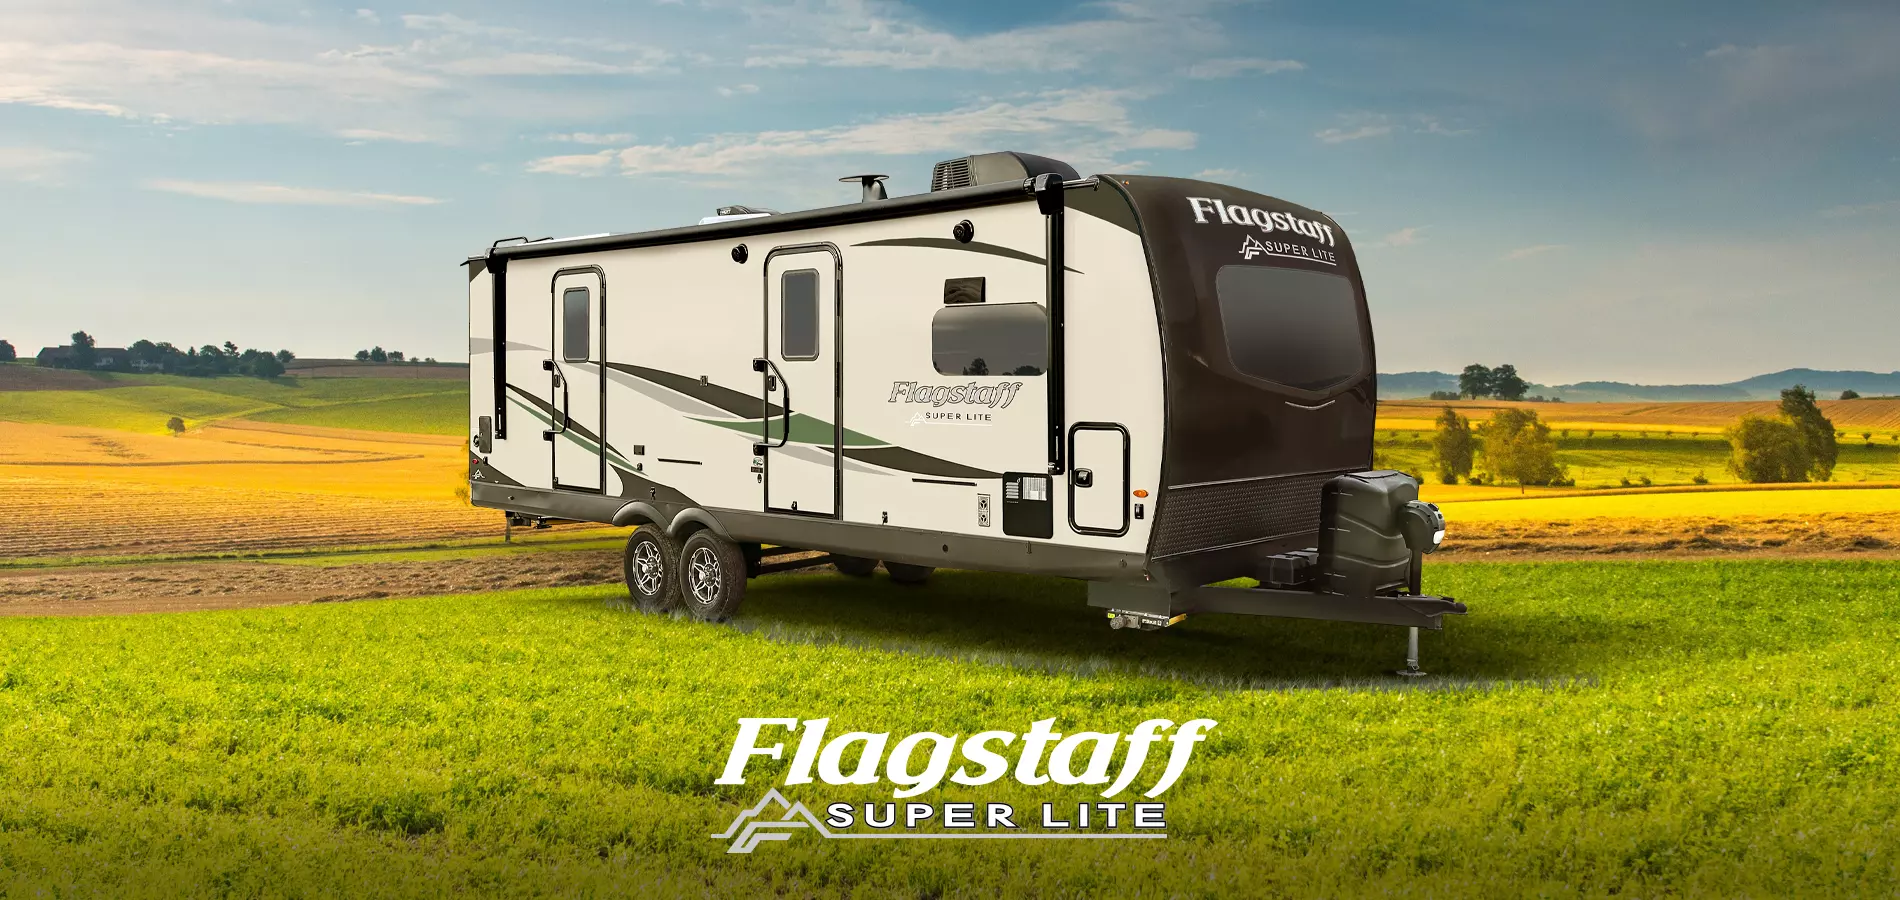 Flagstaff Super Lite Travel Trailers RVs